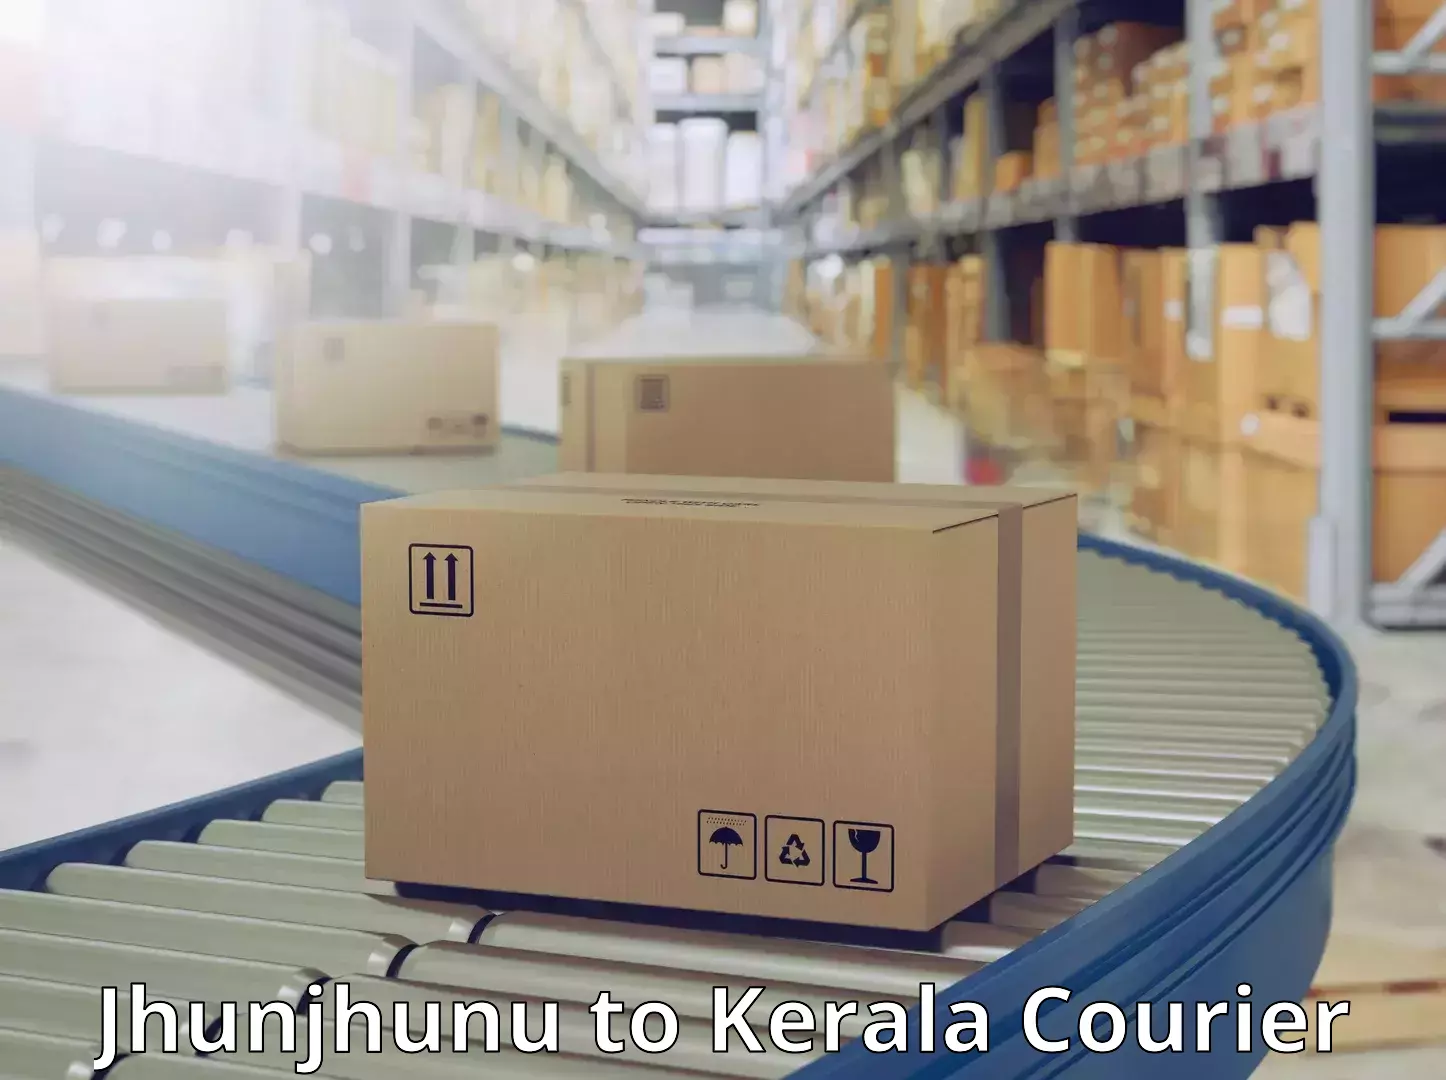 24-hour courier service Jhunjhunu to Guruvayur